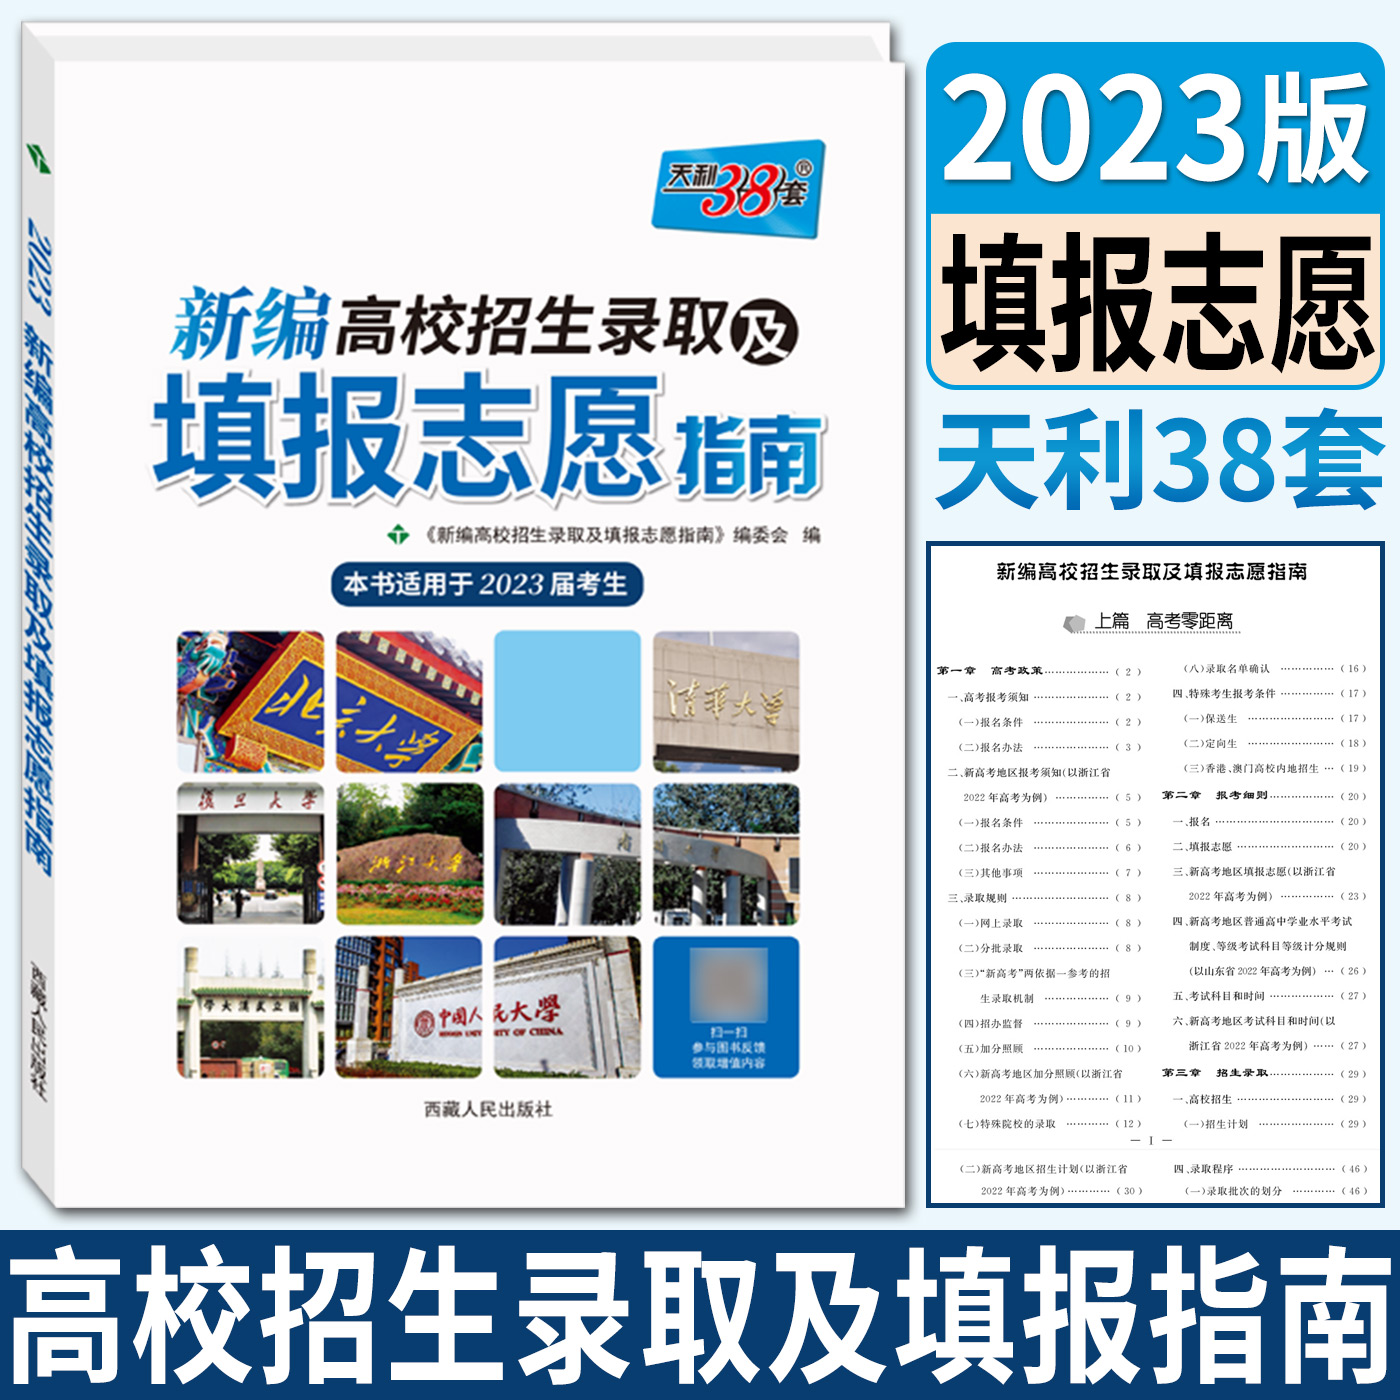 福利:香港大学哈萨克斯坦招生开放式奖学金每年17.5万港币